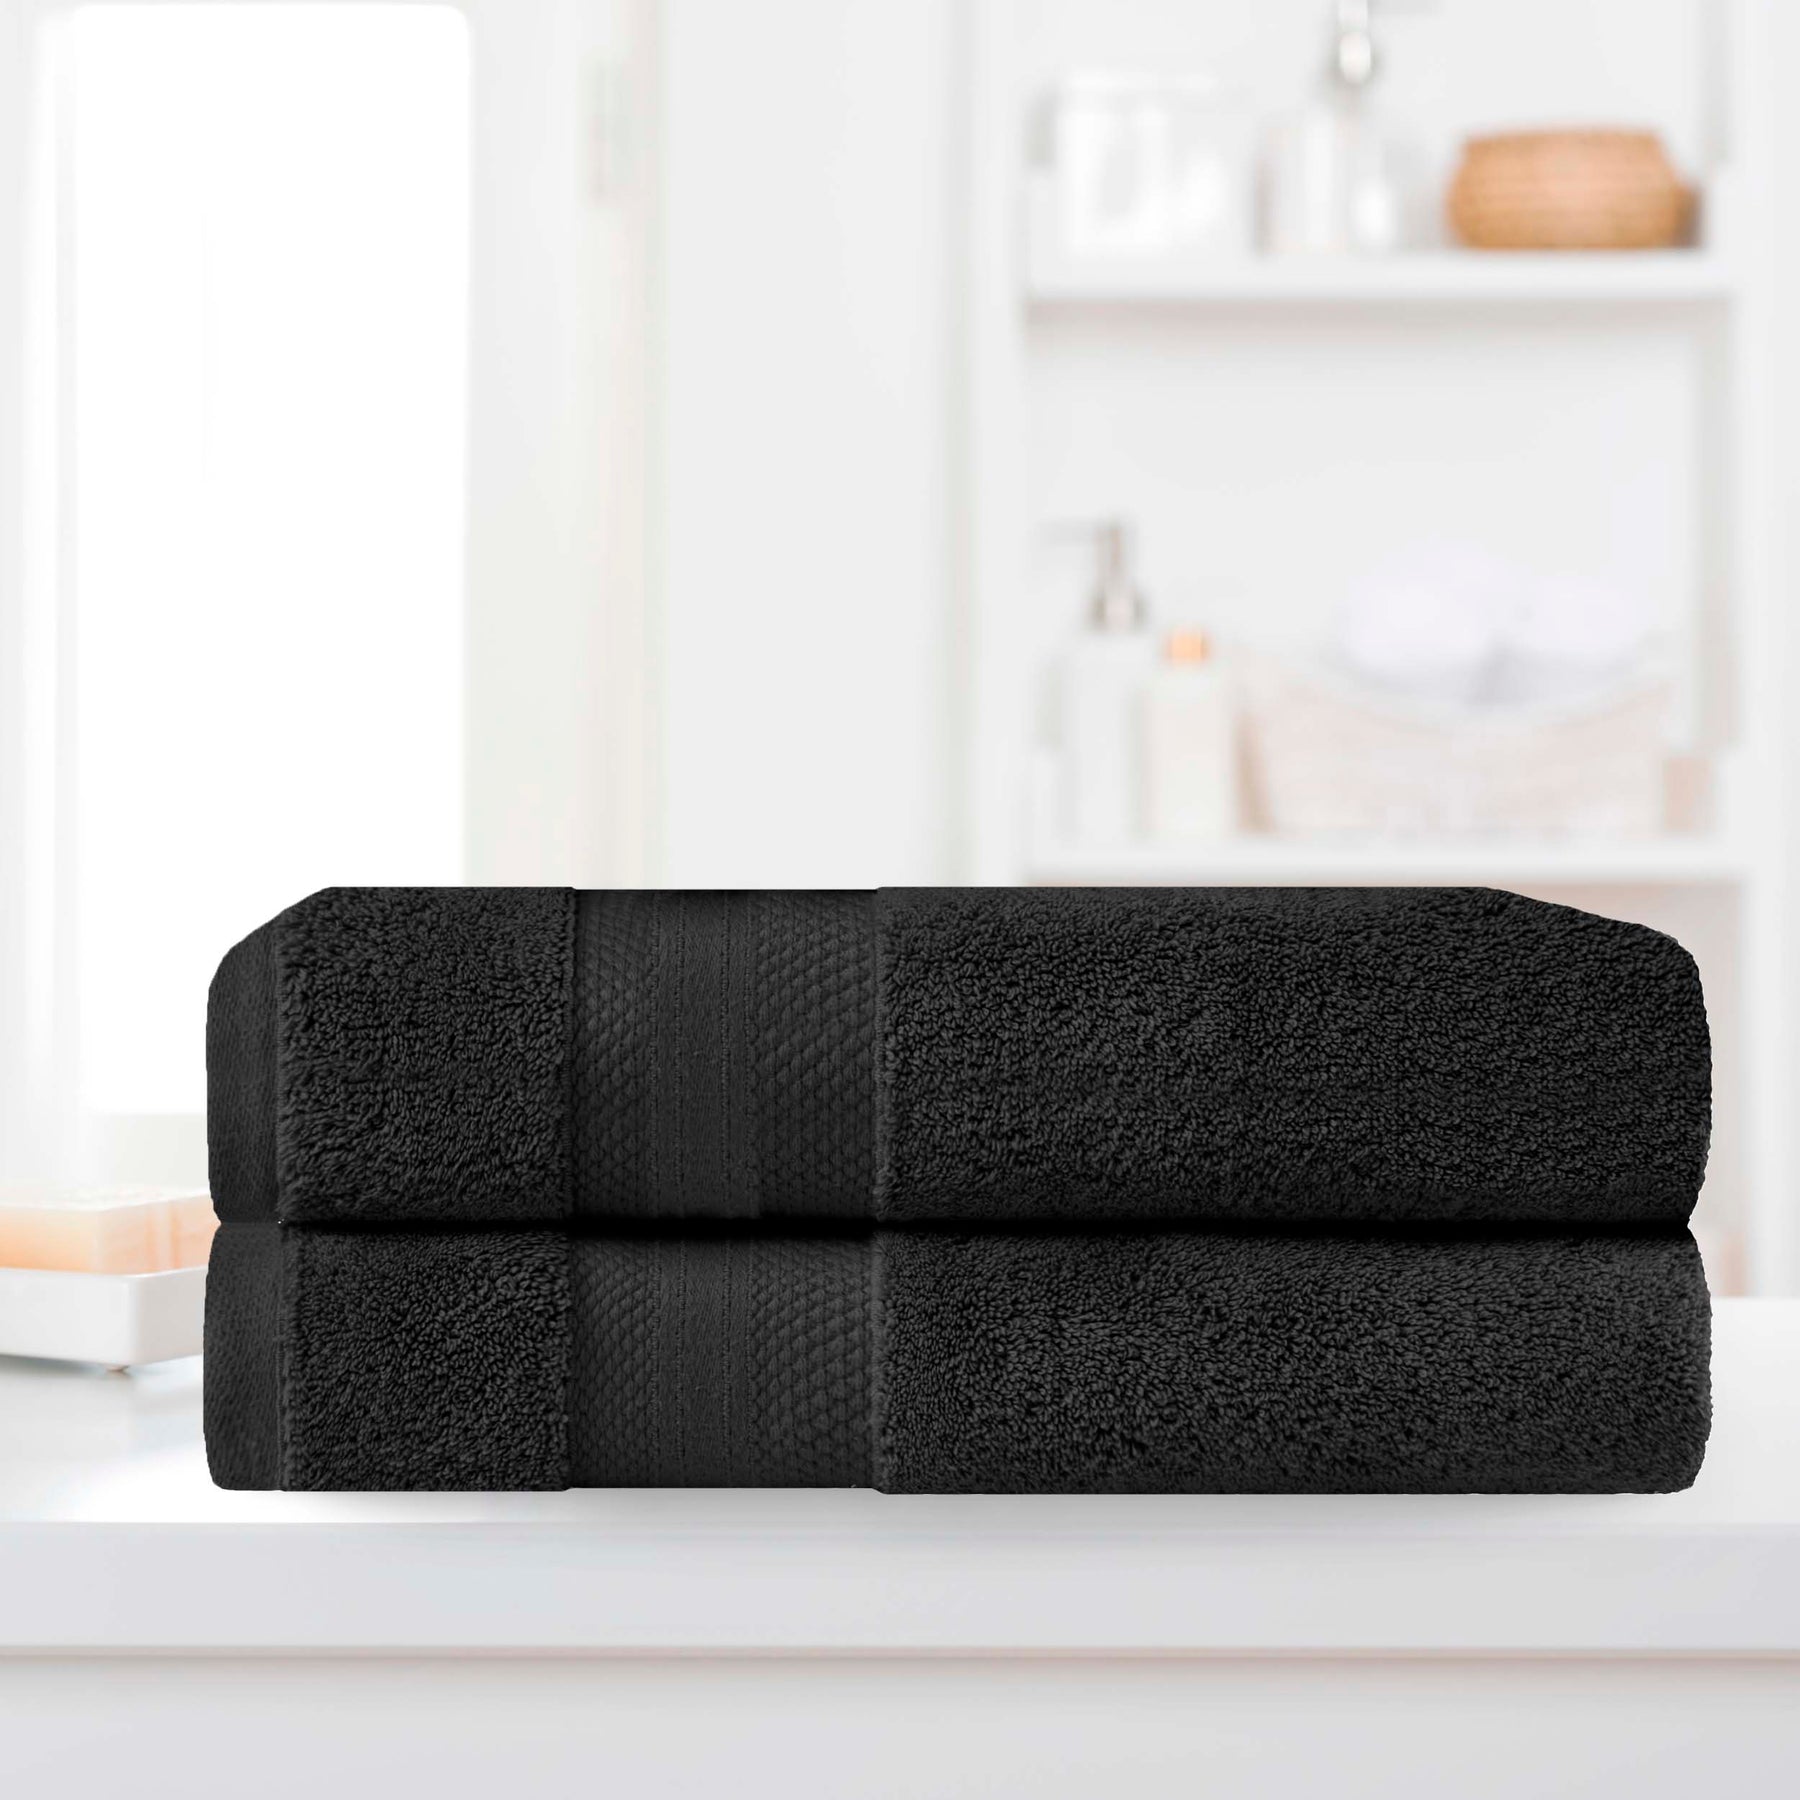 Superior Premium Turkish-Cotton Assorted Towel Set - Black